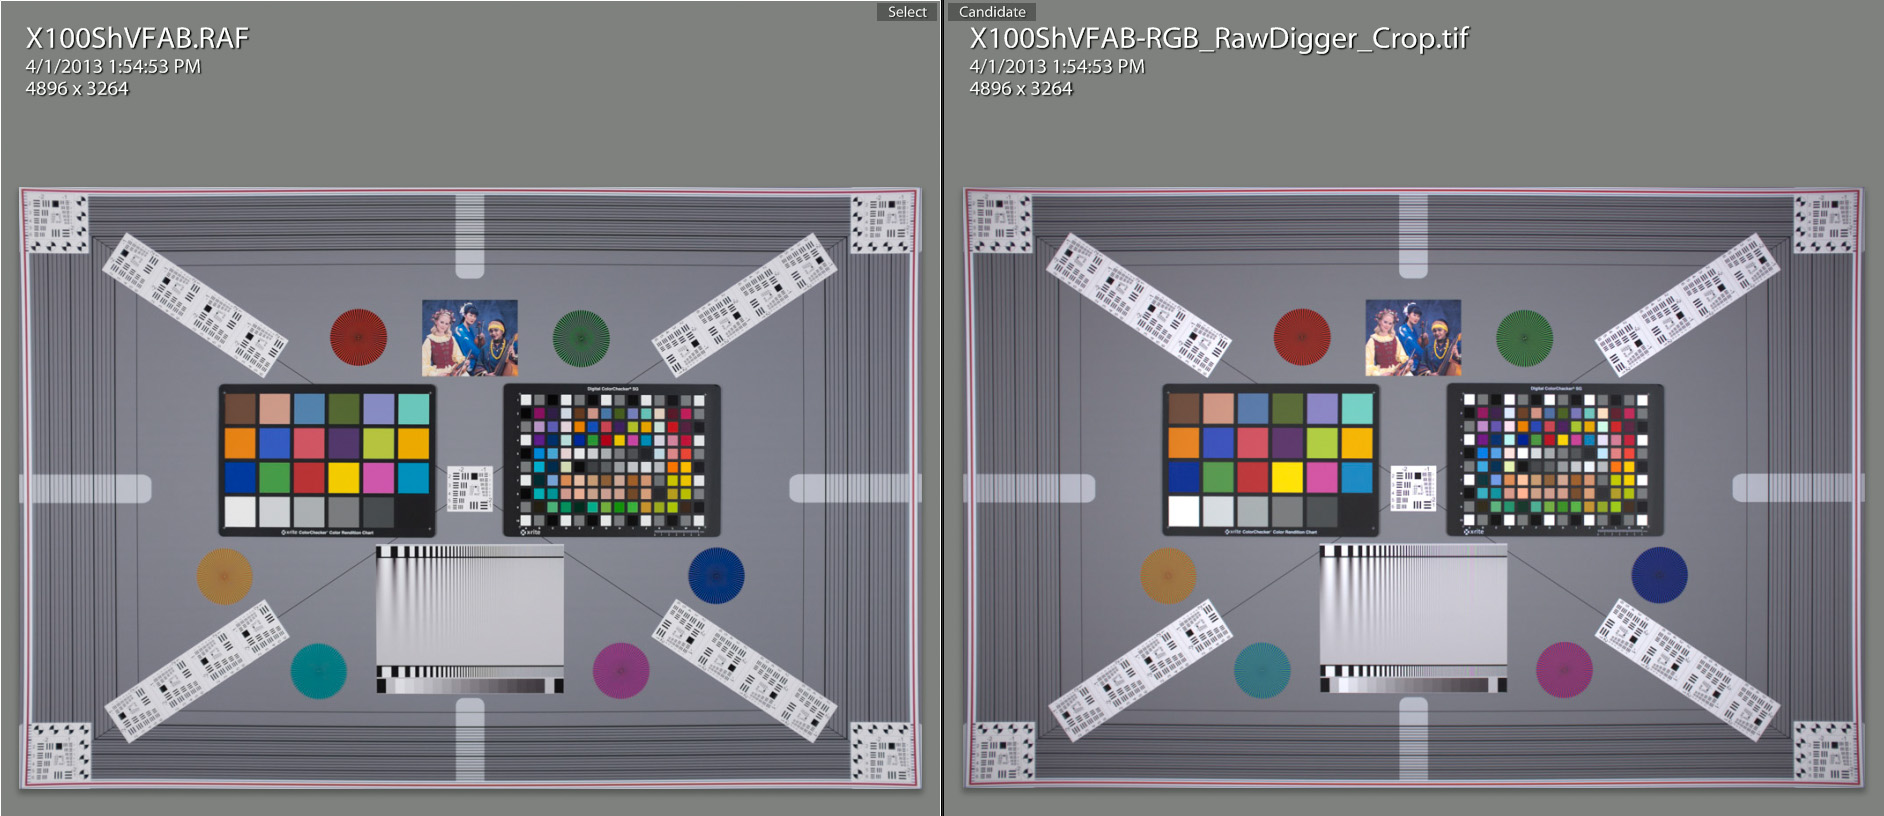 X100ShVFAB-RGB_RawDigger_Crop_Comparison to Raw.jpg